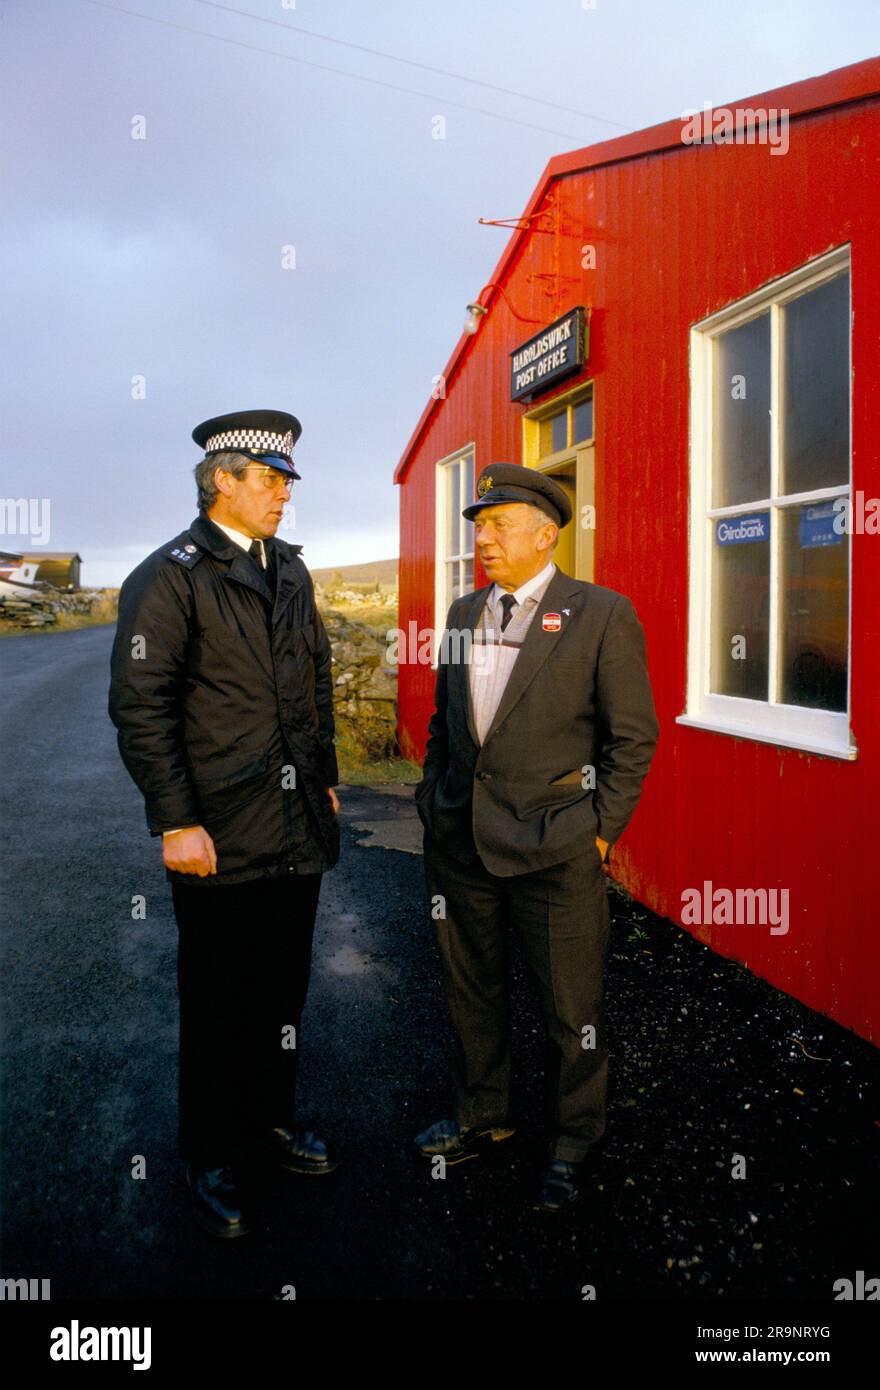 Île d'Unst, bureau de poste de Haroldswick dans les îles Shetland. C'est le bureau de poste le plus au nord de la Grande-Bretagne, vers juin 1988. Le maître de poste Albert Gray est décédé en 1990. Mme Doris Gray a été postmistress jusqu'à sa retraite en 1999. Personne ne voulait prendre le bureau de poste dans la communauté, il a donc fermé en 1999, vu ici avec le policier Harry Edwards. HOMER SYKES, ROYAUME-UNI Banque D'Images